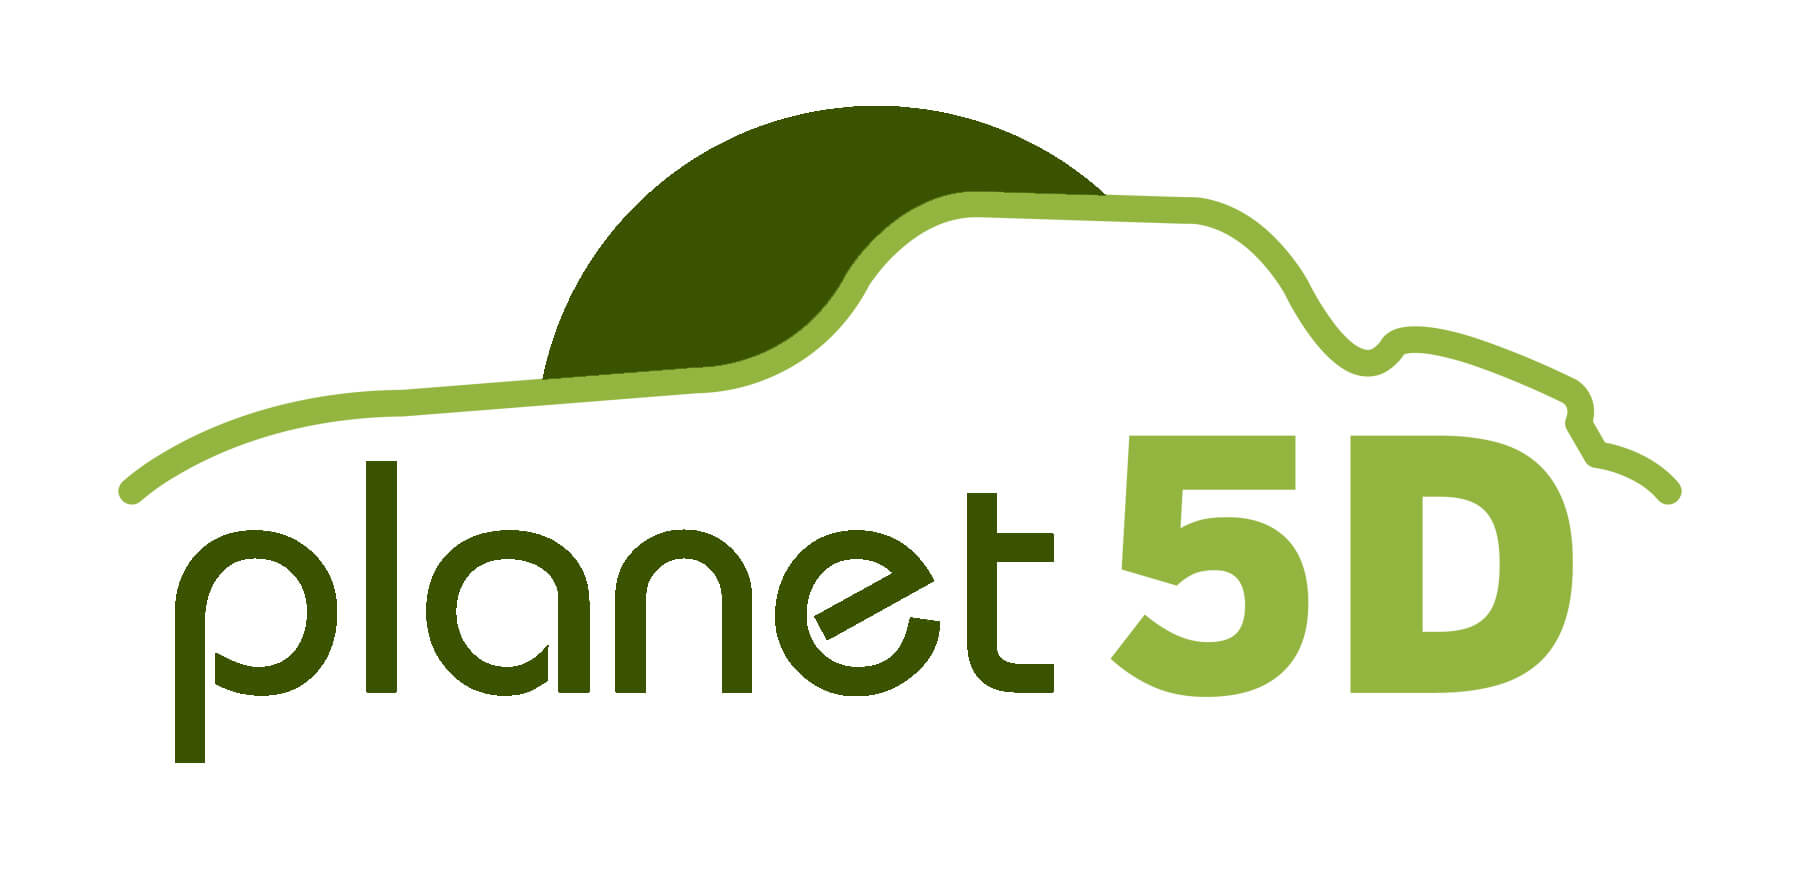 Planet5d.